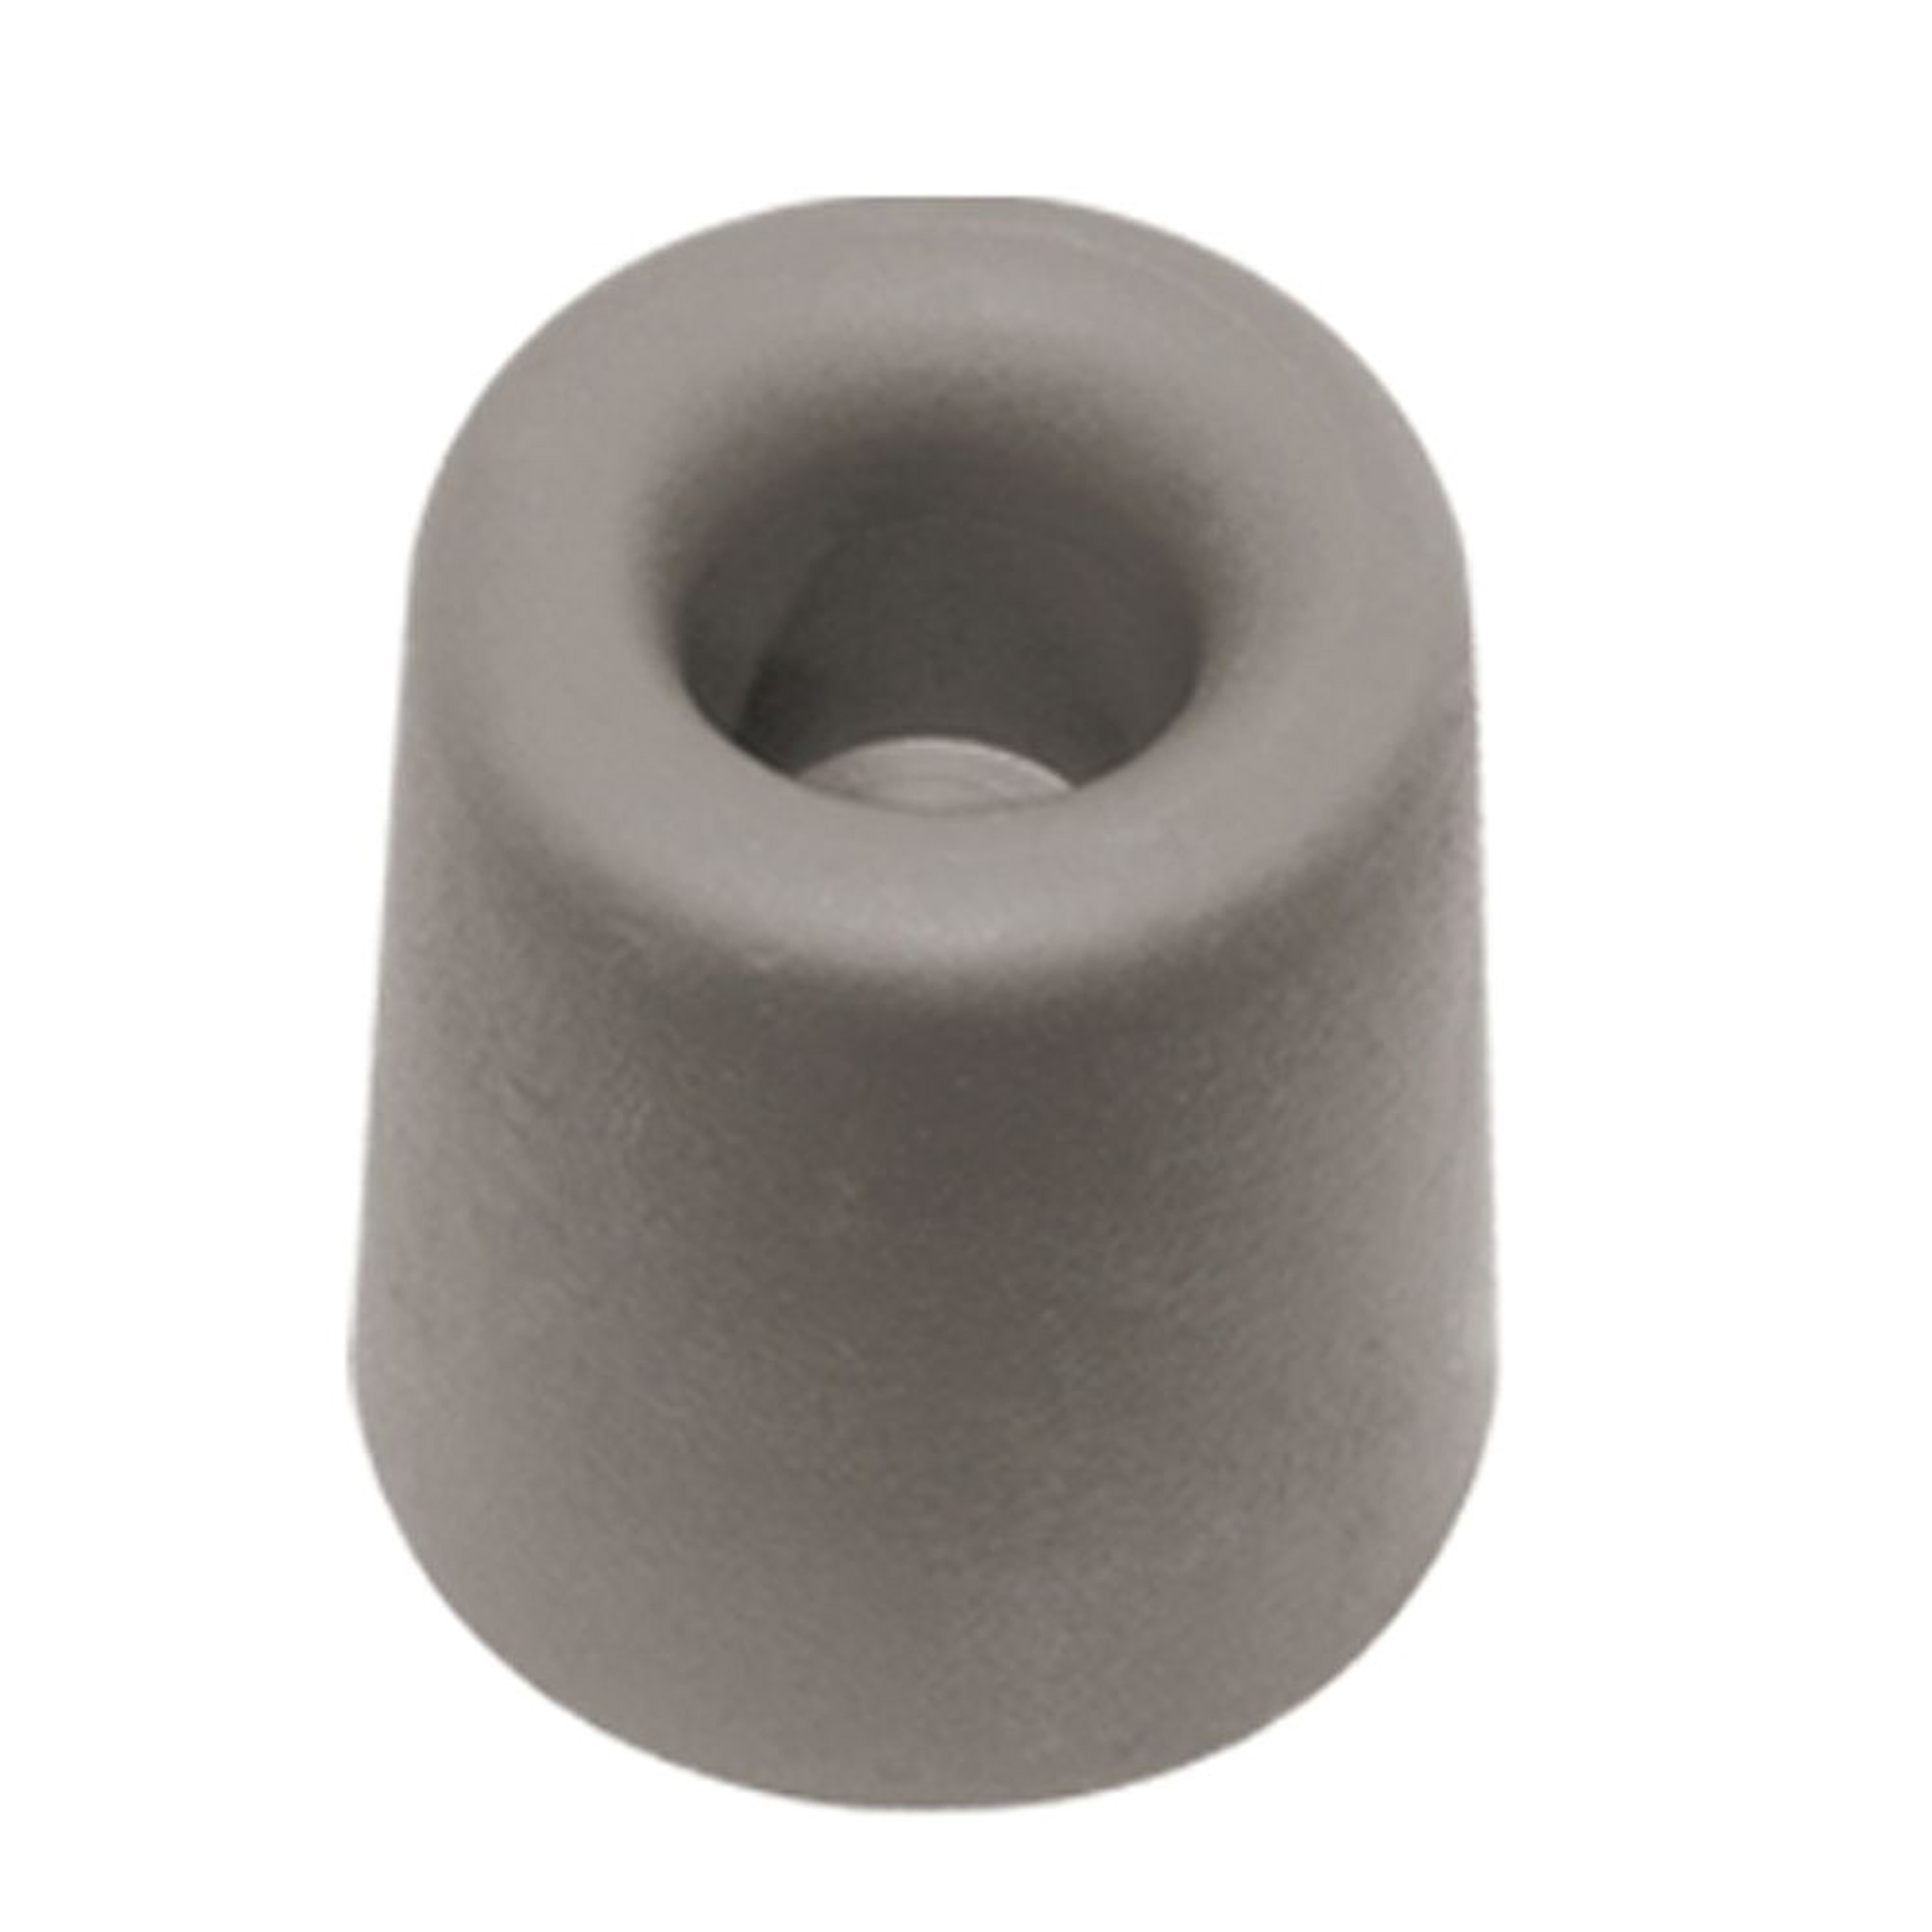 Deurbuffer deurstopper grijs rubber 35 x 30 mm schroefbevestiging